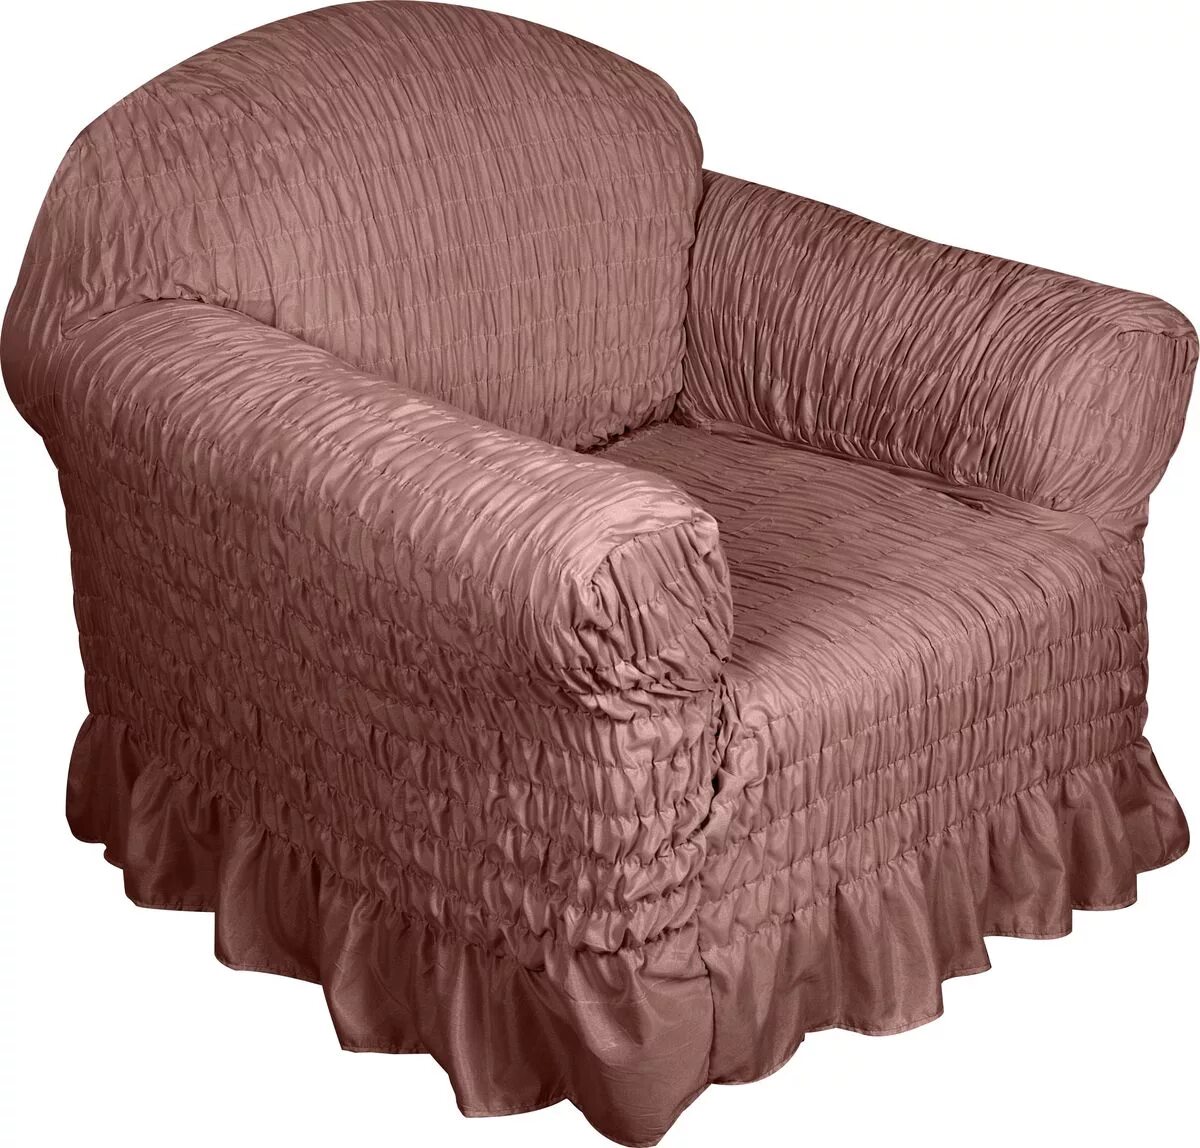 Еврочехол на диван и кресла. Чехол для кресла. Накидка на кресло. Накидки на диван и кресла.